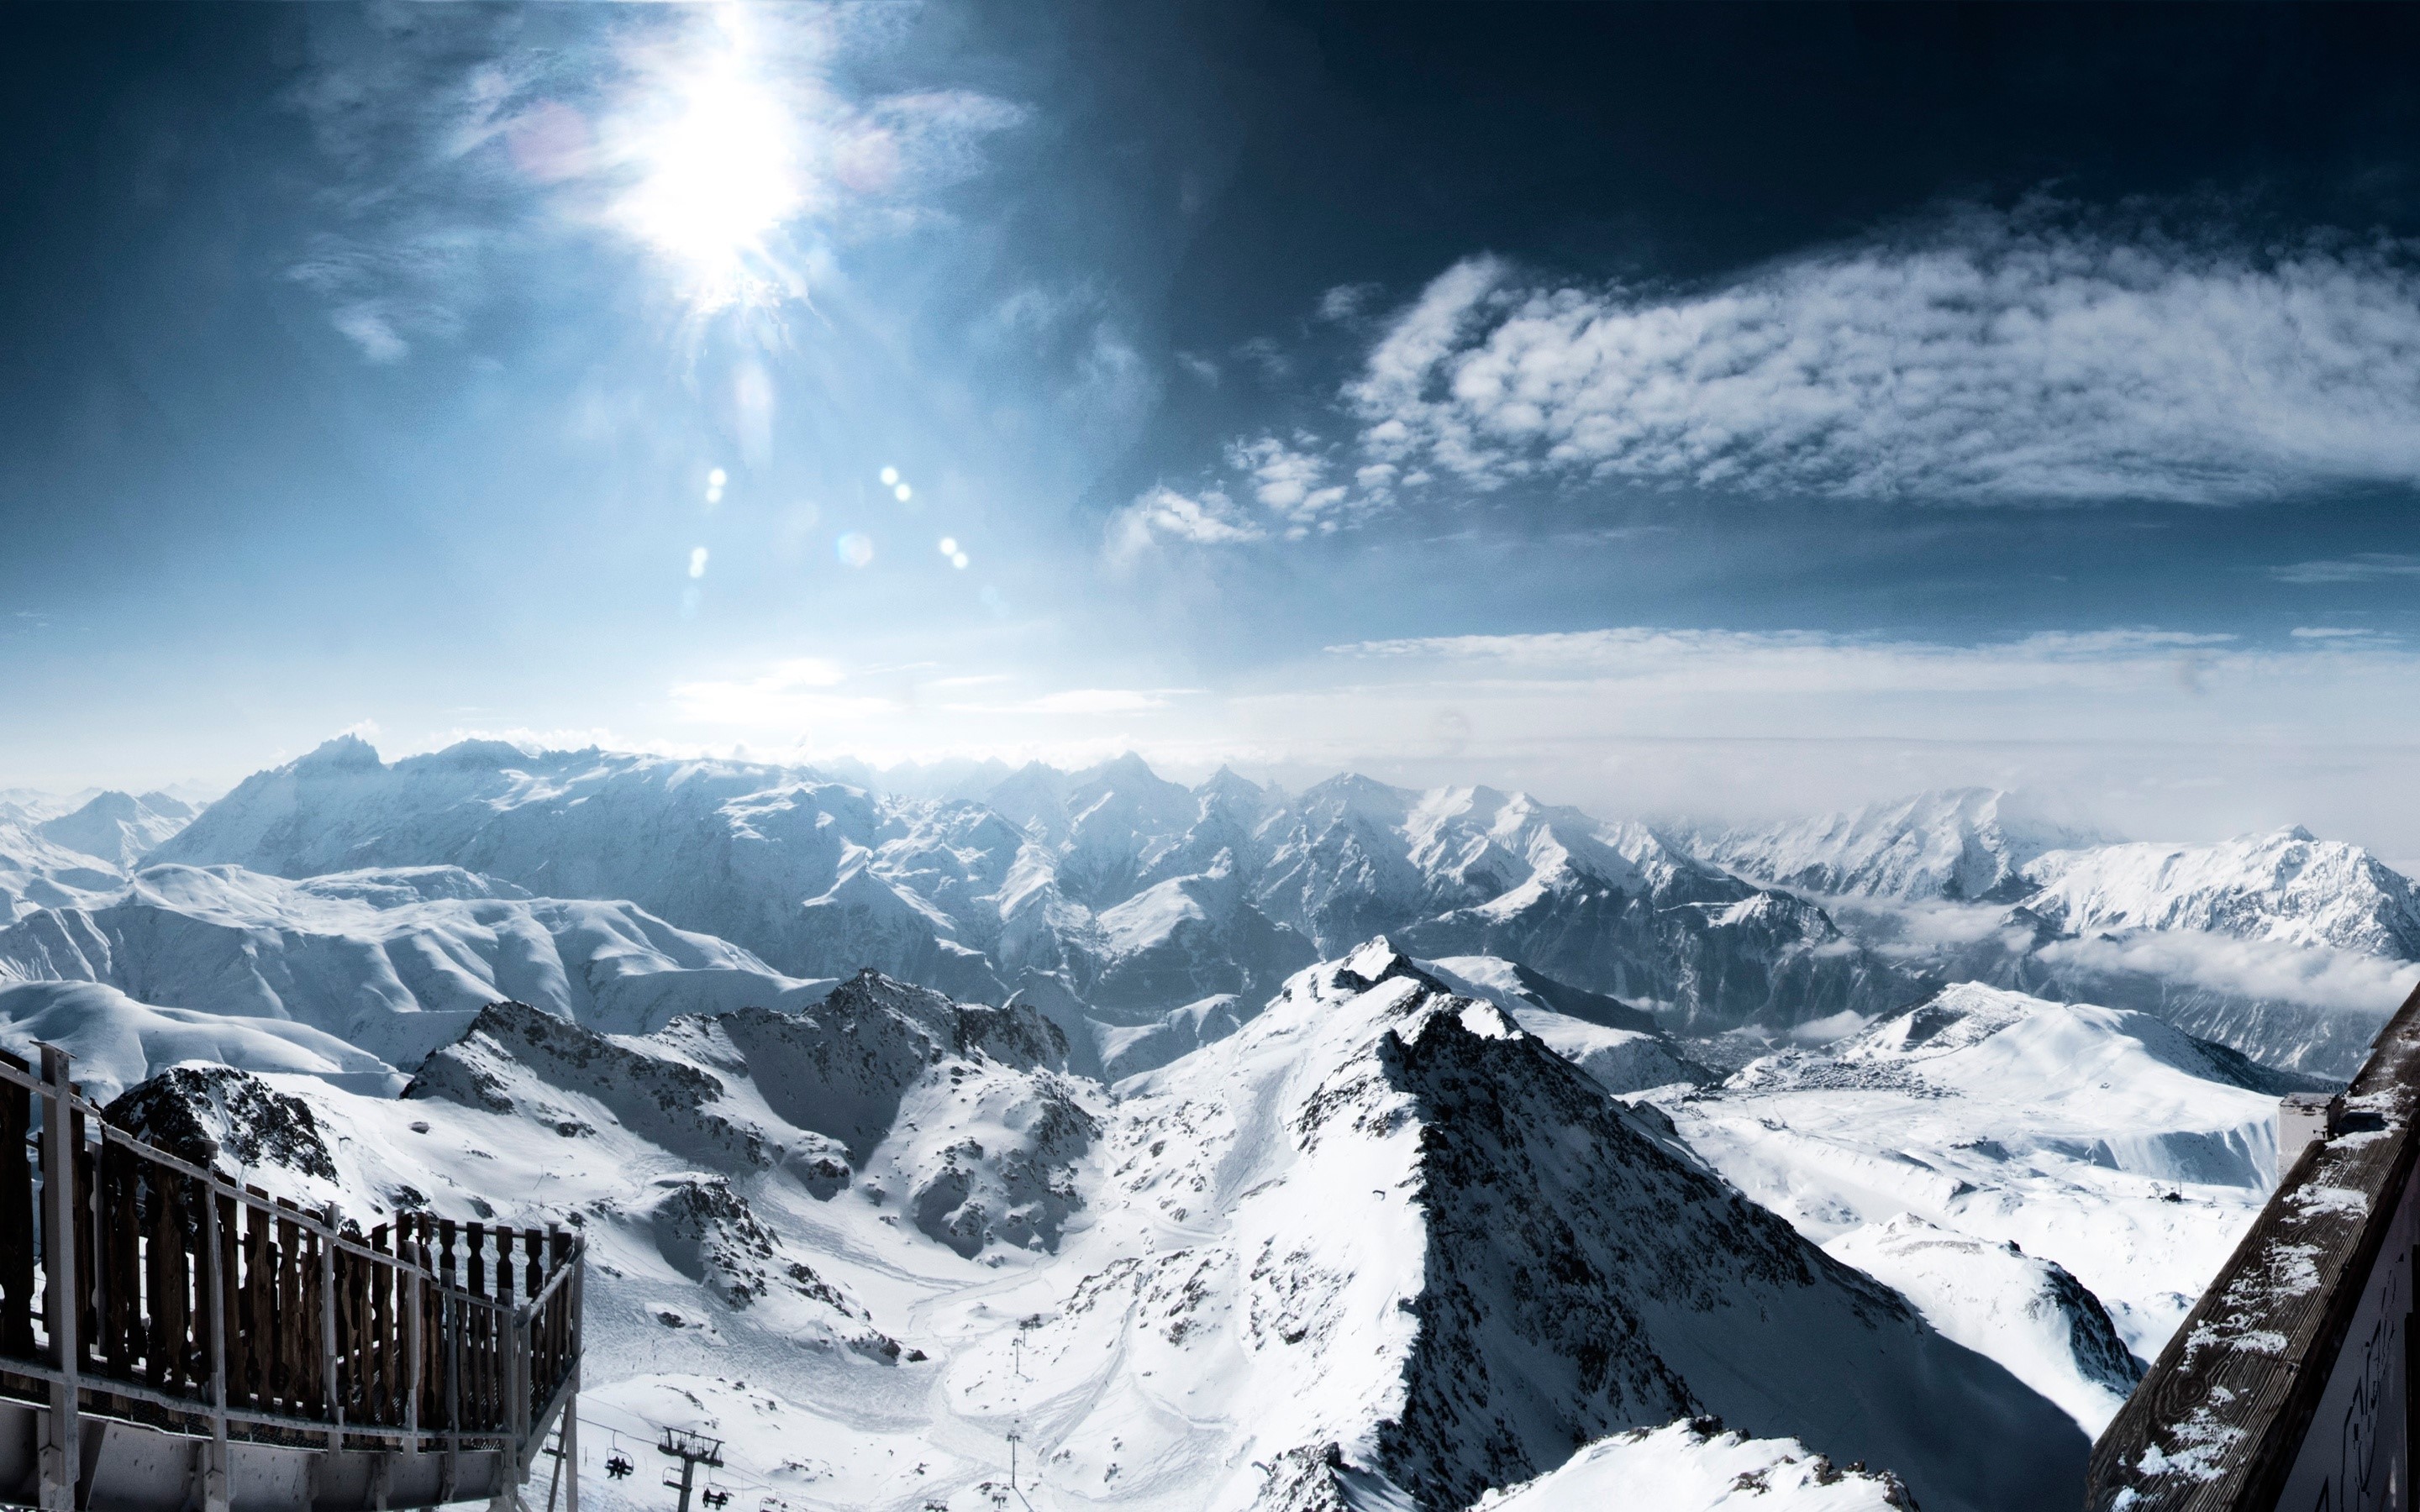 Fondos de pantalla Alpes con nieve